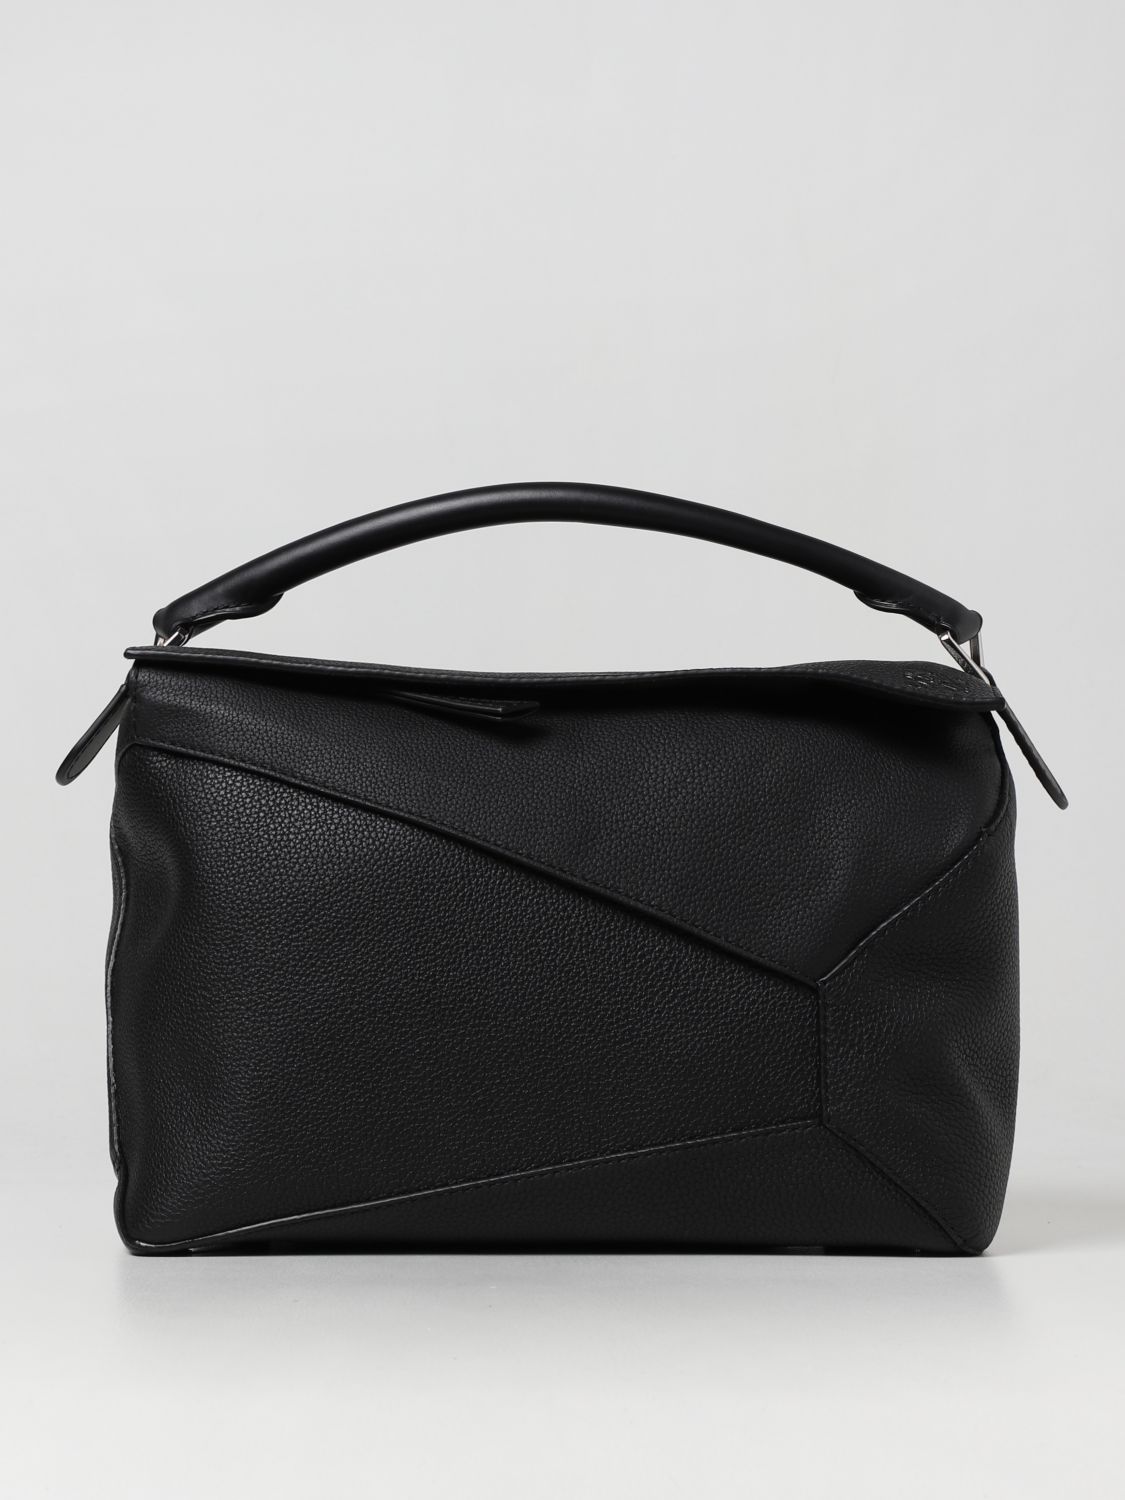 LOEWE: bags for man - Black | Loewe bags B510140X01 online at GIGLIO.COM